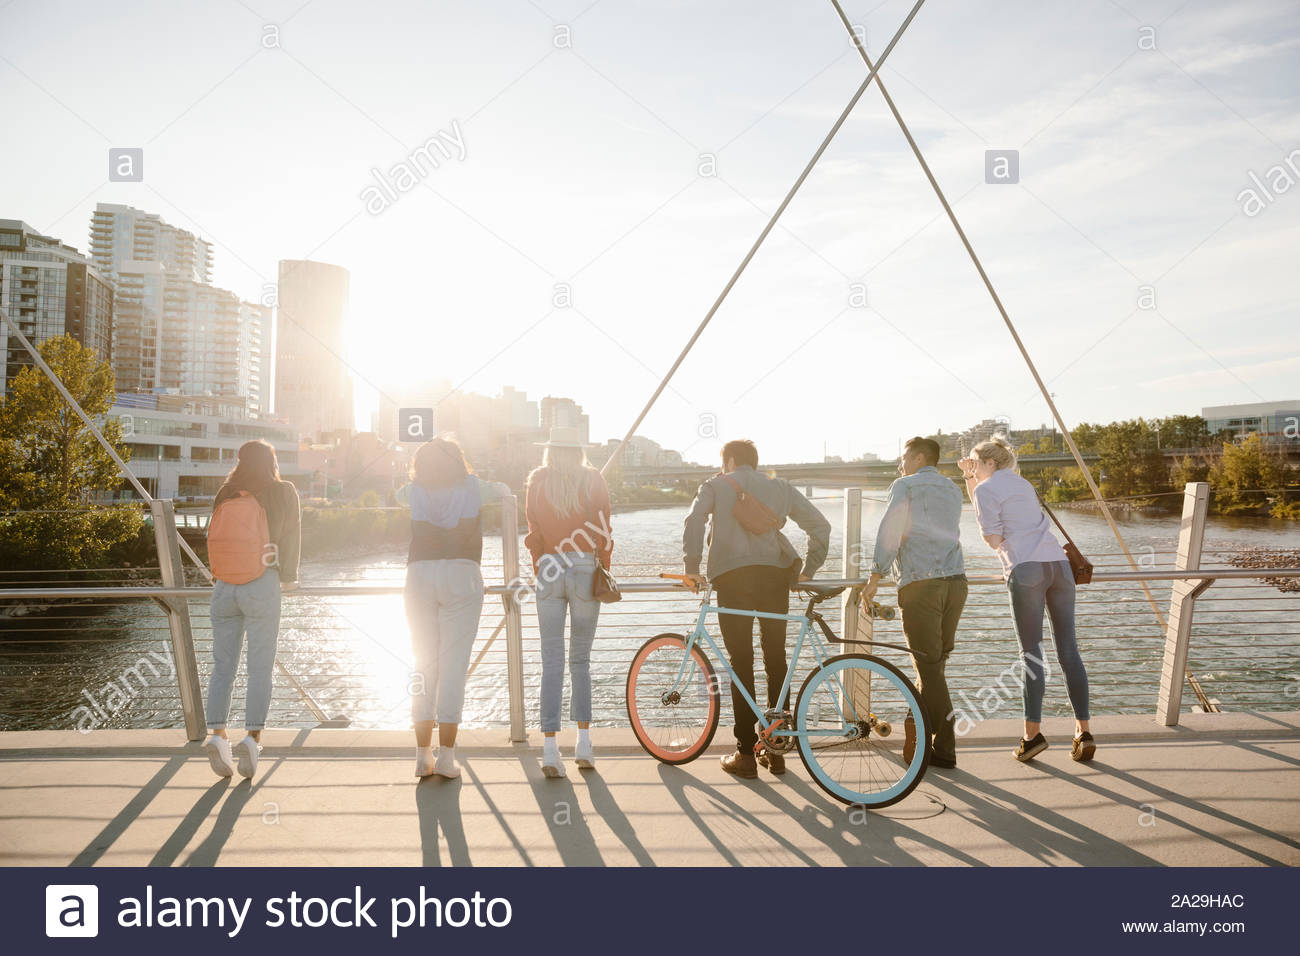 Les jeunes adultes à la recherche d'amis à fleuve de sunny, pont urbain Banque D'Images